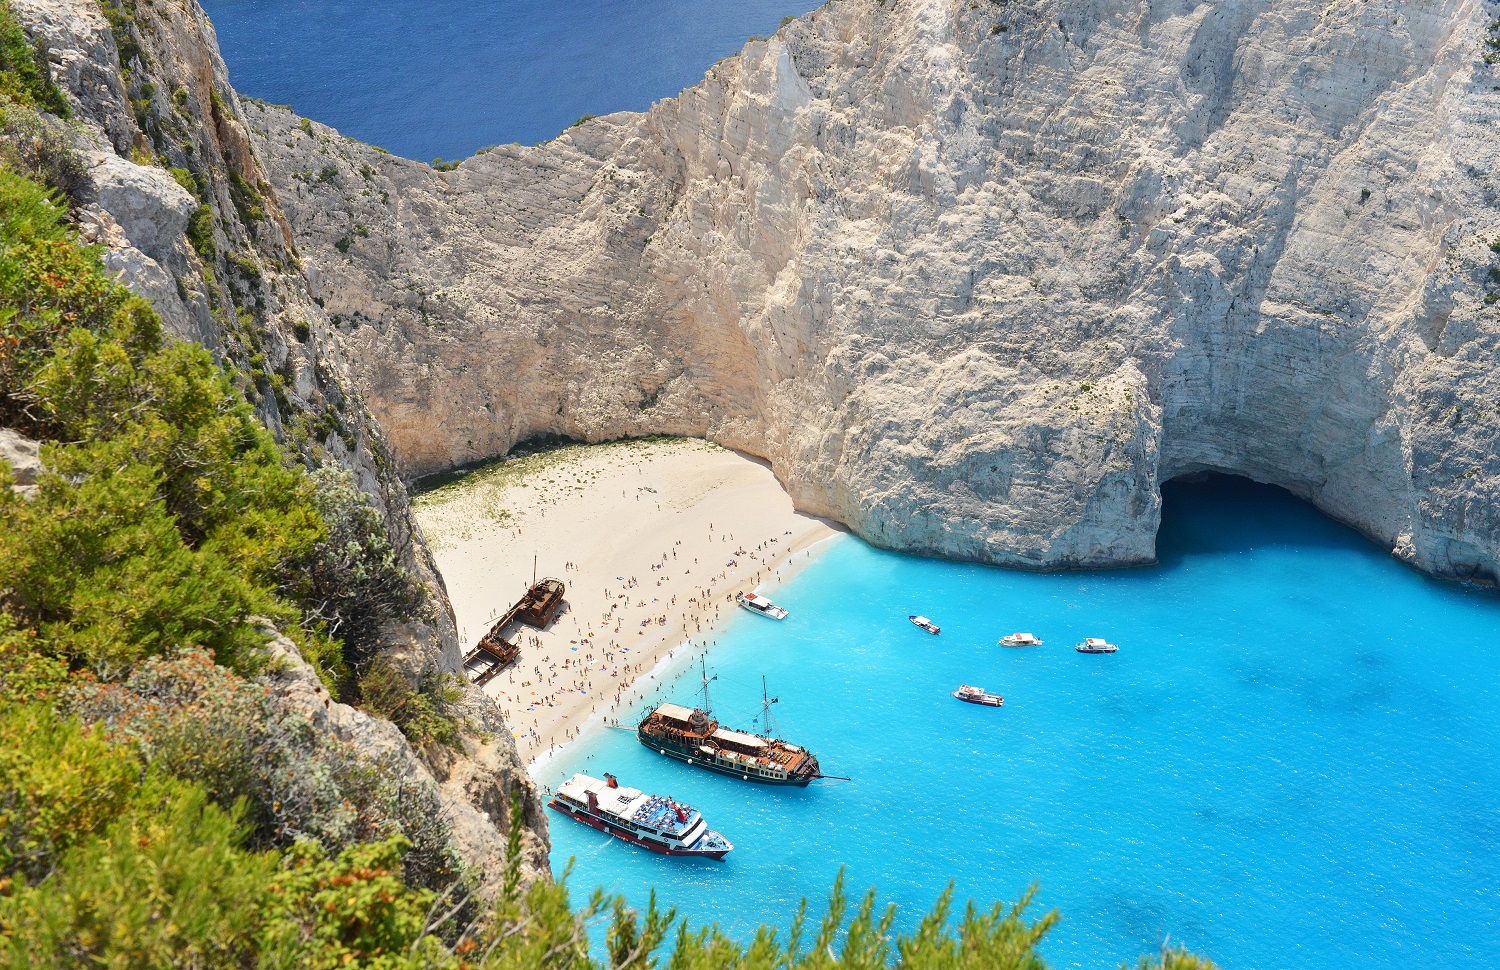 Bu Yaz Hangi Yunan Adasına Gideceksiniz?